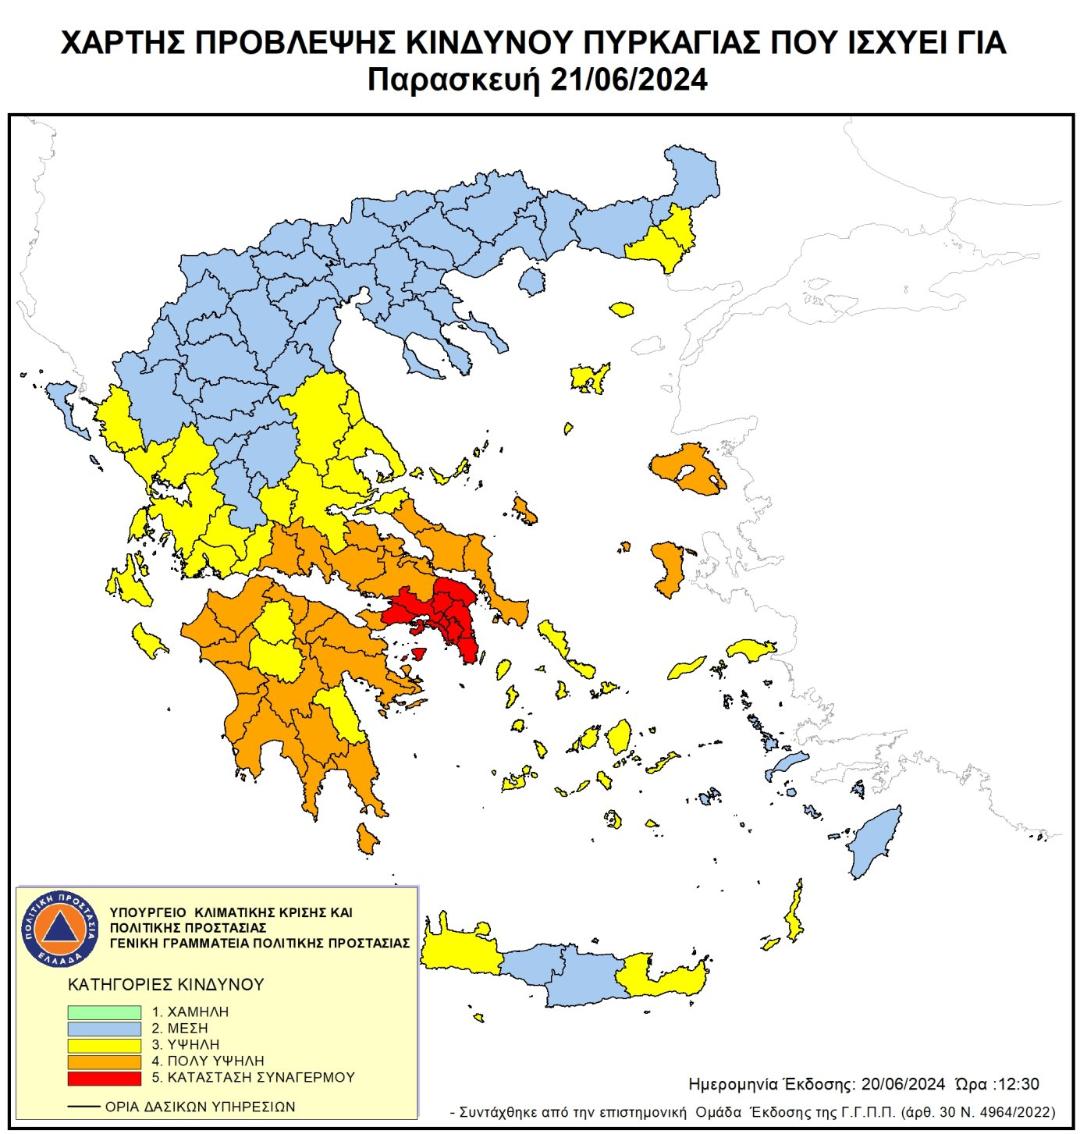 Δελτίο τύπου - Πολύ υψηλός κίνδυνος πυρκαγιάς σε περιοχές της Δυτικής Ελλάδας την Παρασκευή 21 Ιουνίου 2024